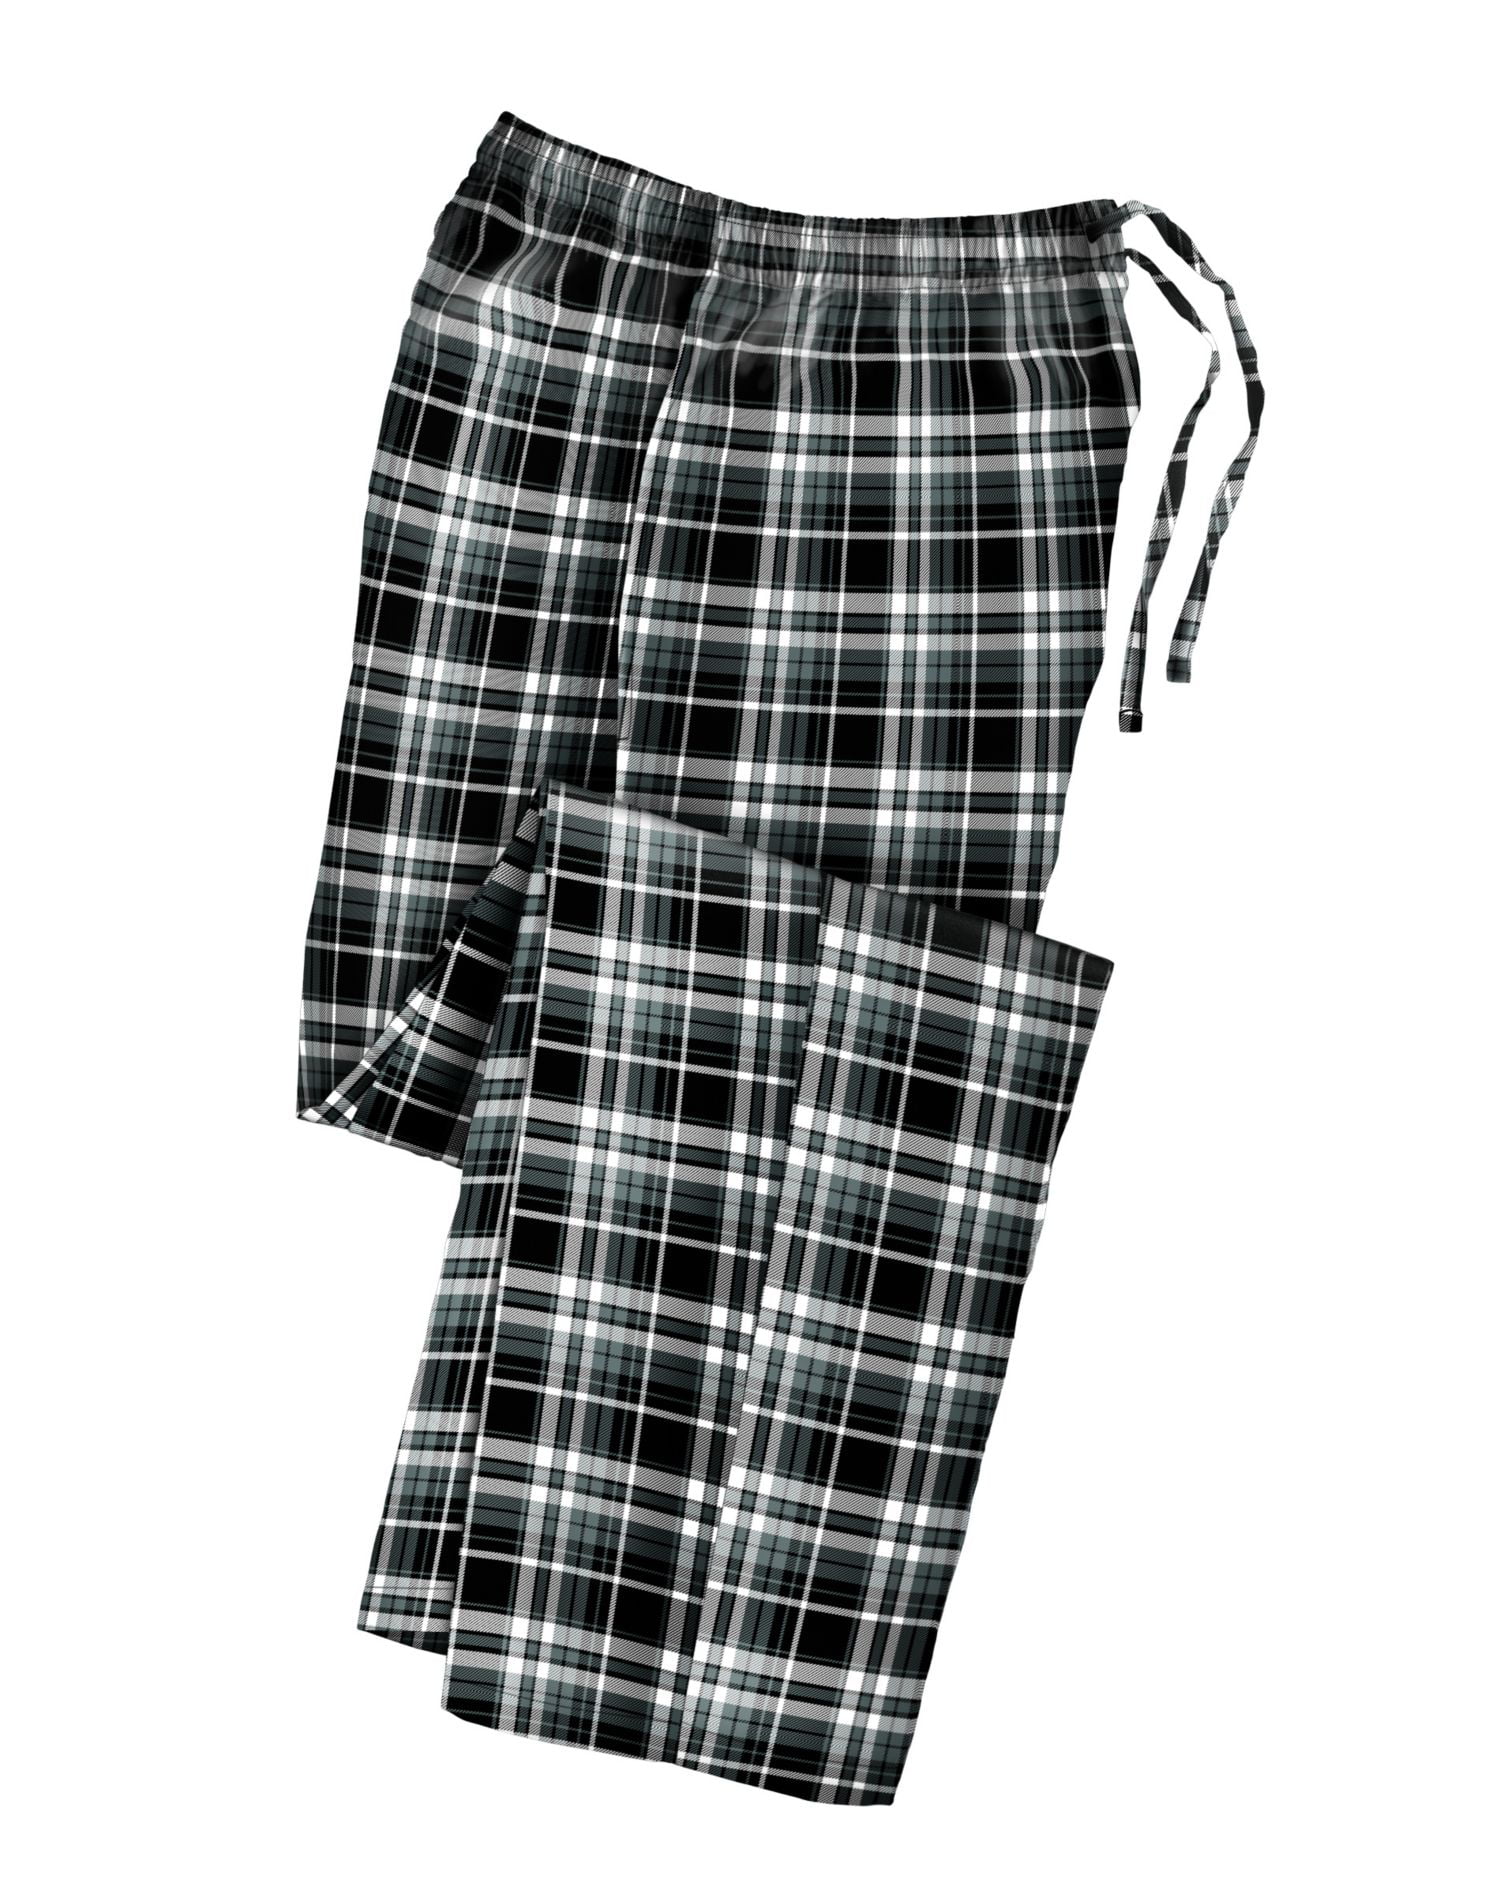 YINC Men's 100% Cotton Super Soft Flannel Pajama Pants